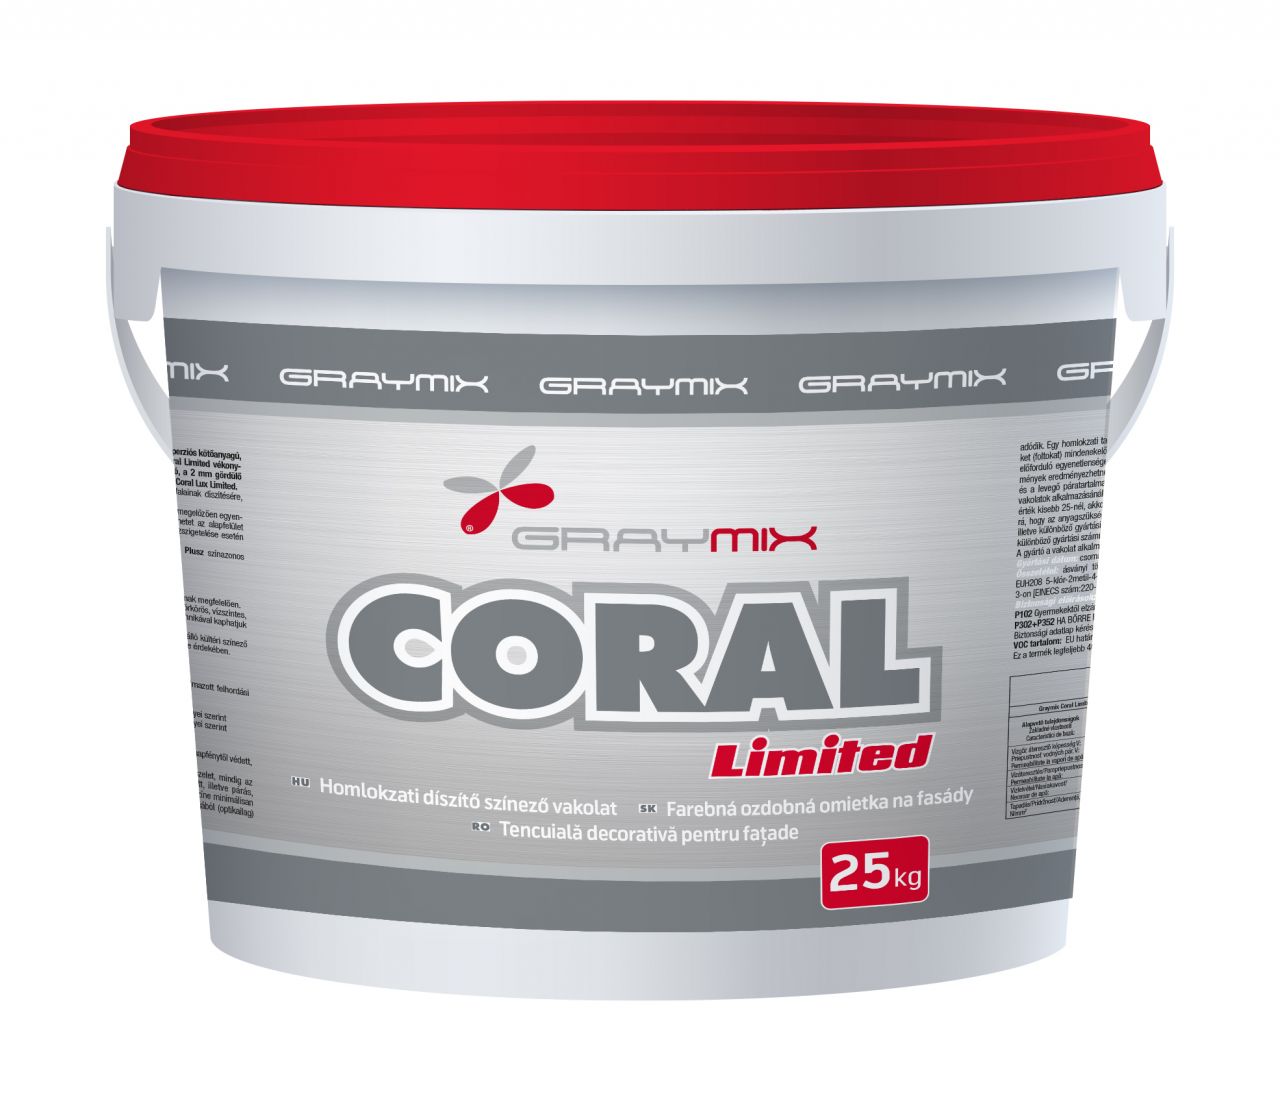 Graymix Coral Lux Limited 1,5 mm kapart vékonyvakolat TÖRTFEHÉR színben 25kg/vödör